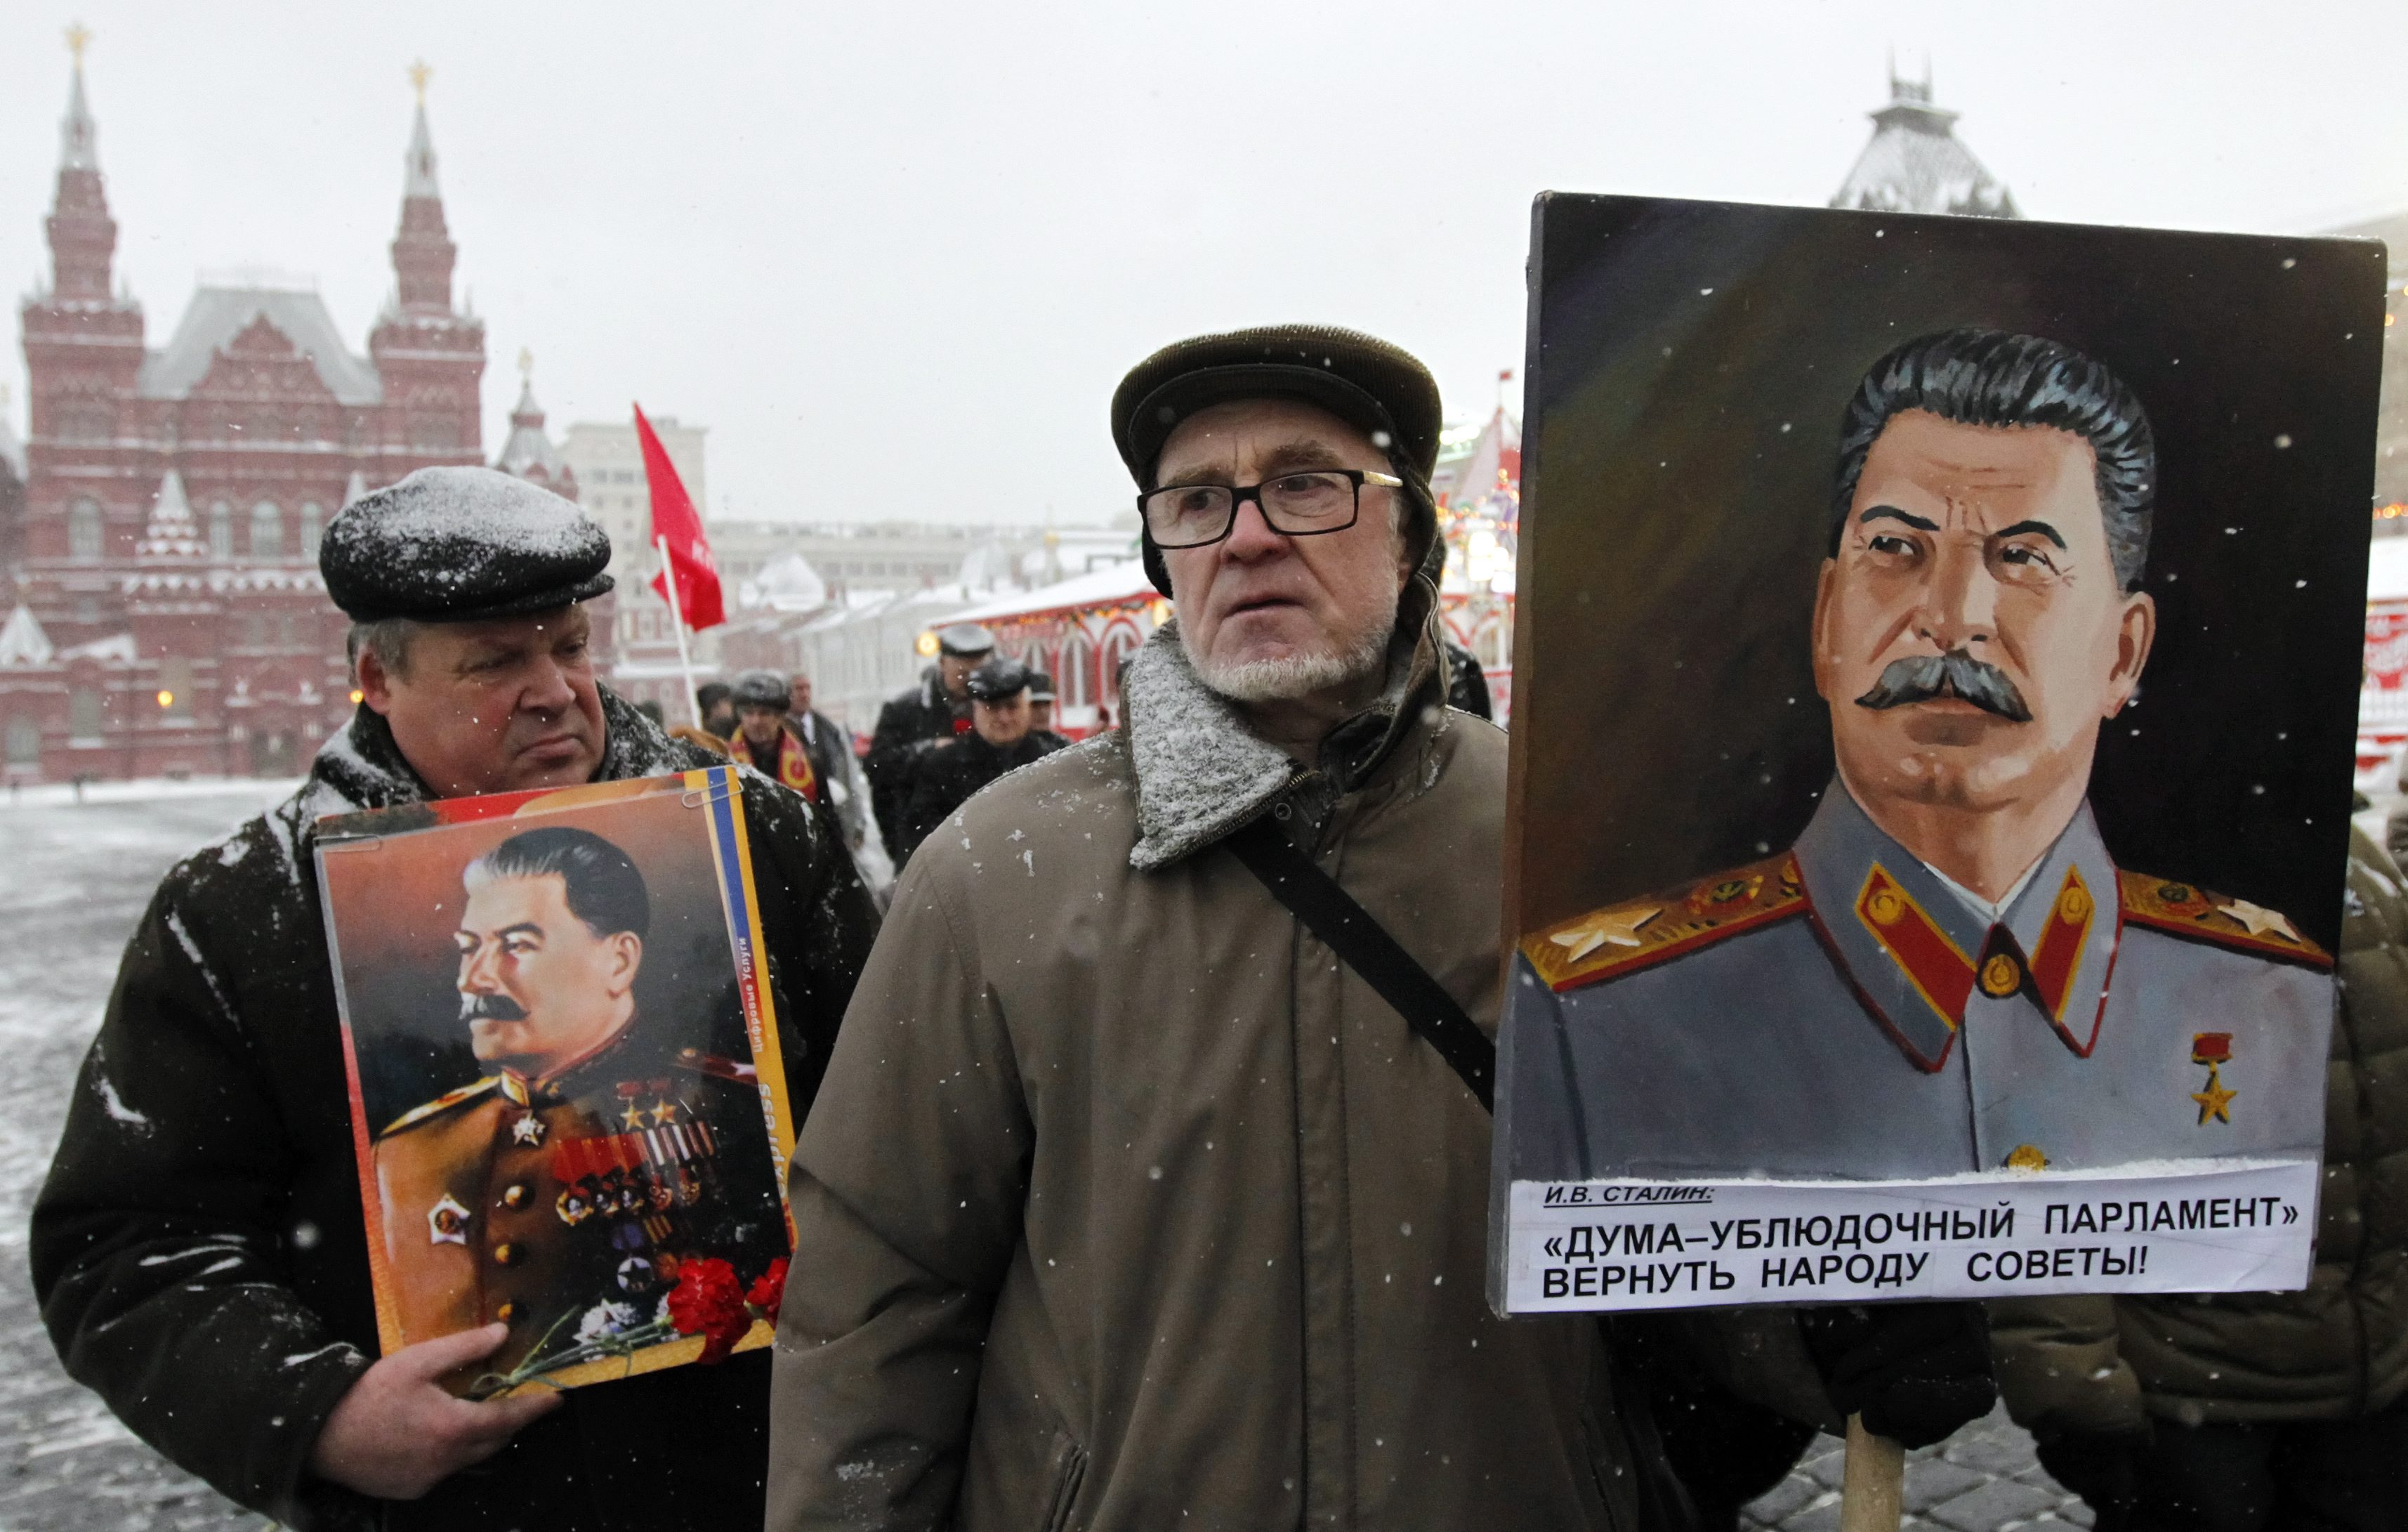 Sympatycy Stalina i członkowie Komunistycznej Partii Federacji Rosyjskiej z portretami wodza